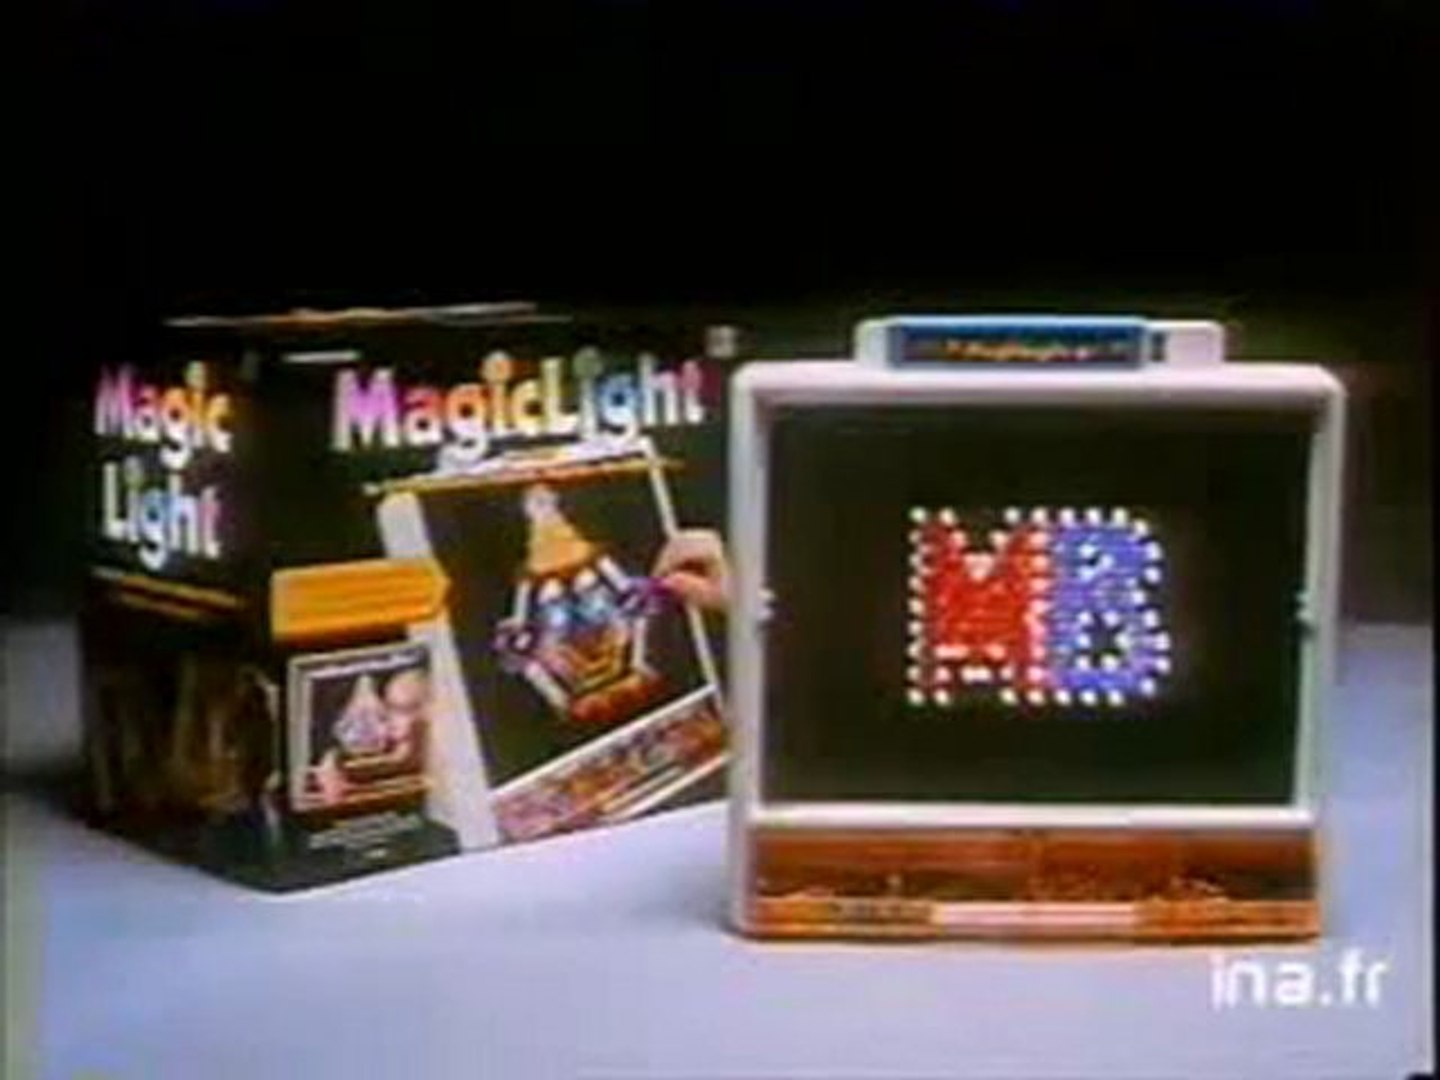 Publicité Jeu MB Magic Light 1989 - Vidéo Dailymotion